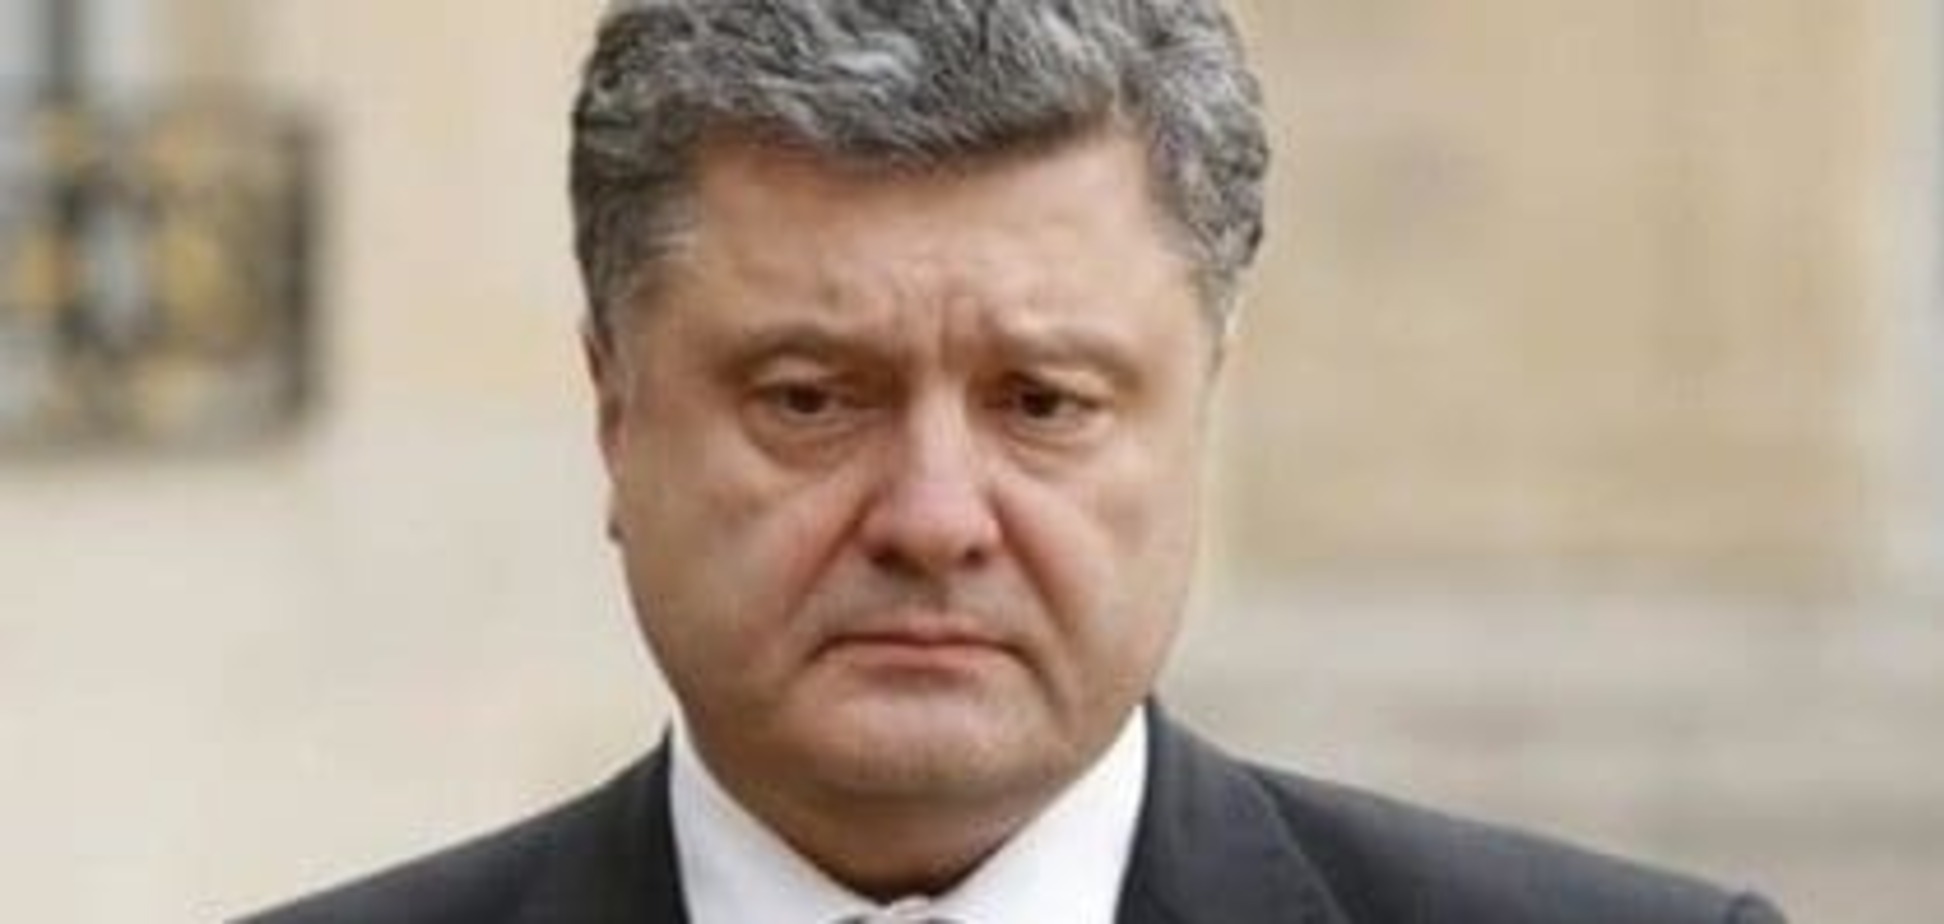 СМИ: представителем Порошенко в Раде стал Артур Герасимов